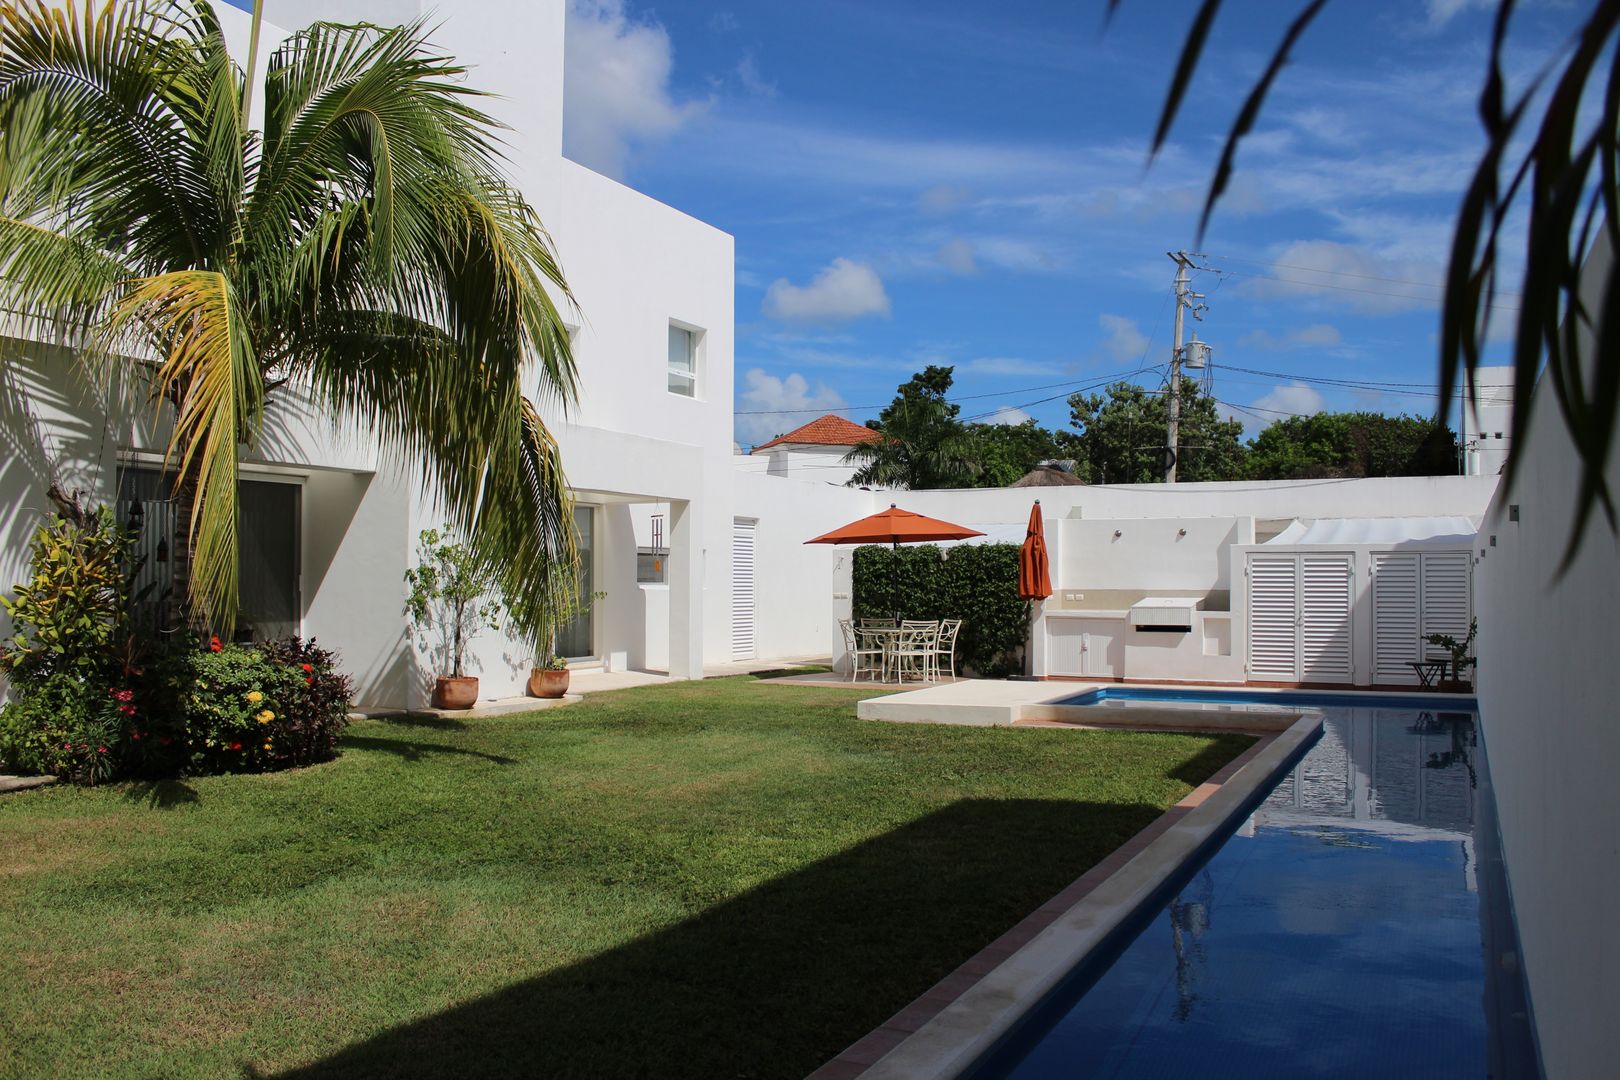 Casa habitacion en en Cozumel Quintana Roo, A2 HOMES SA DE CV A2 HOMES SA DE CV Casas de estilo minimalista